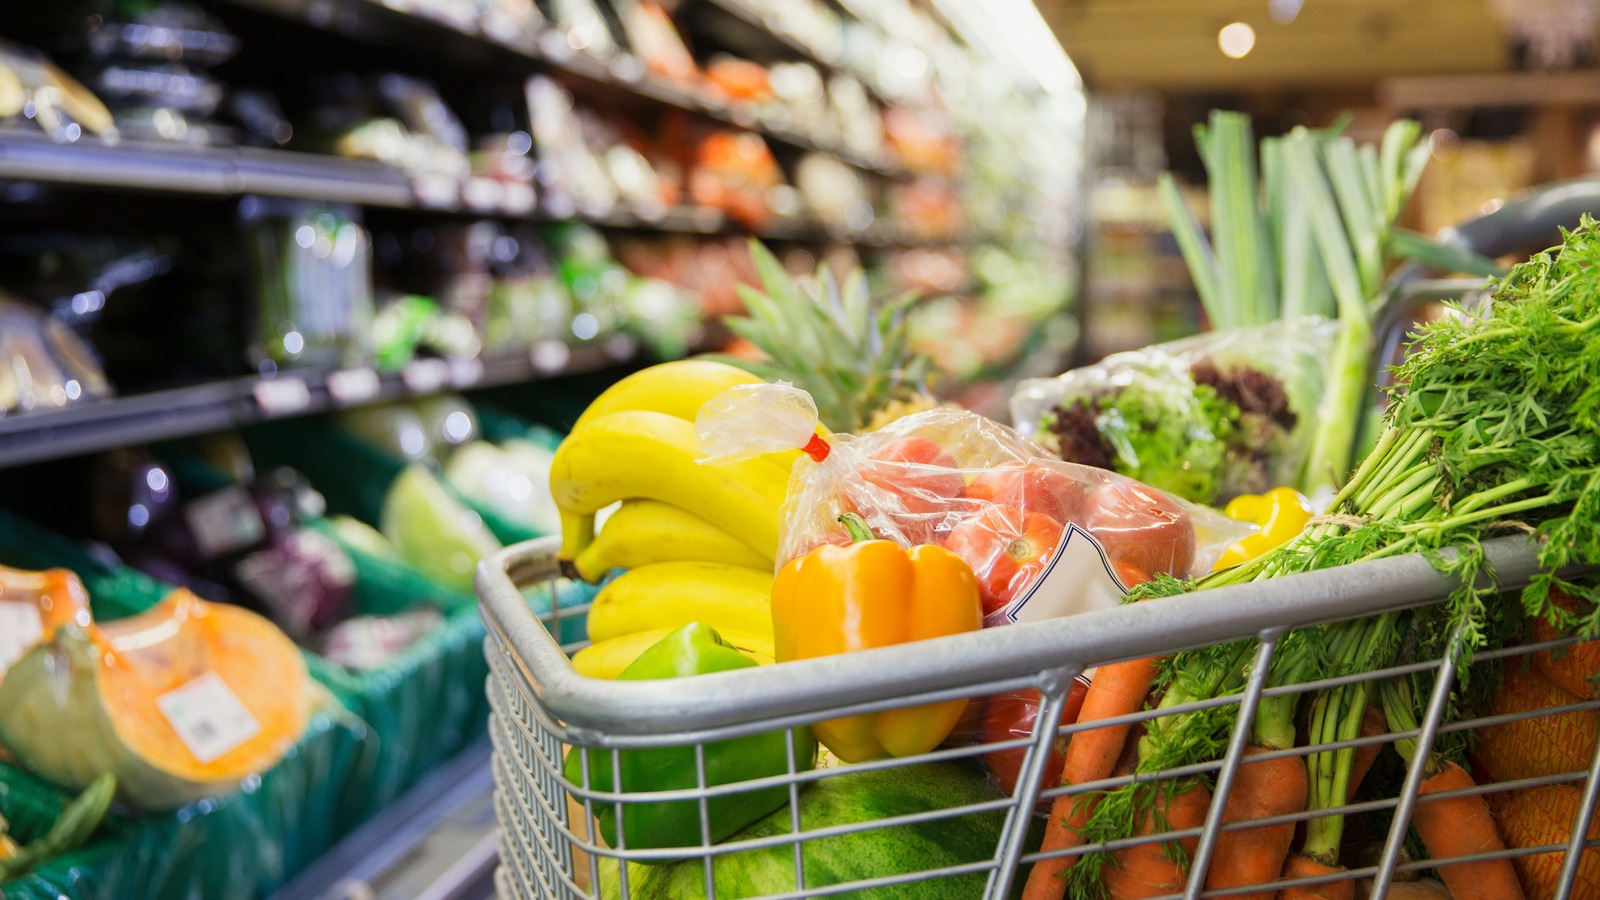 The USDA's New Summer EBT Program Will Provide Groceries For 21 Million